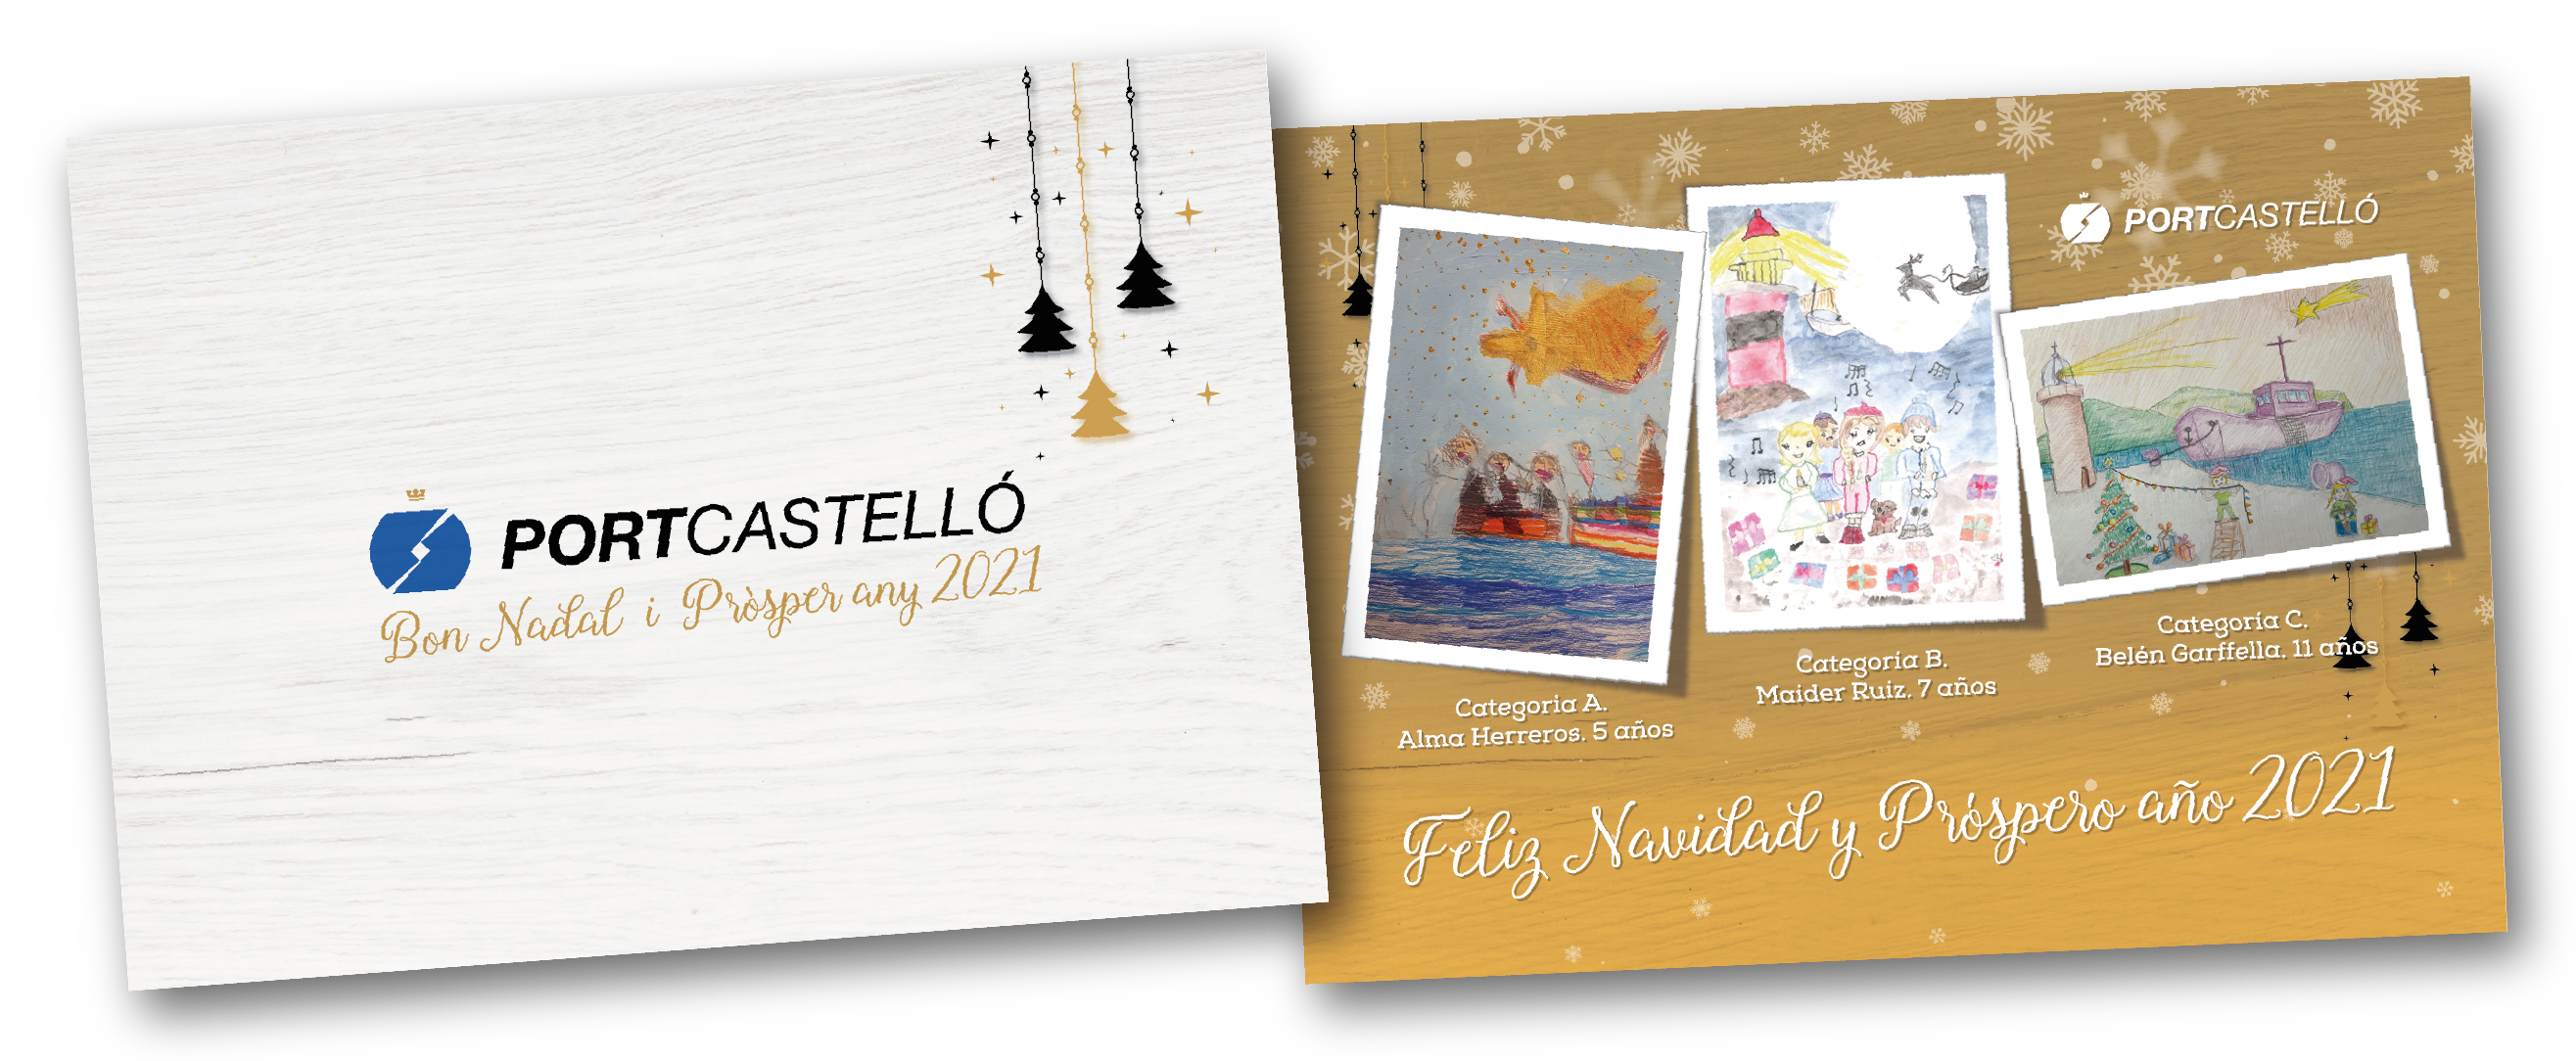 Un centenar de escolares participan en el concurso de postales navideñas de PortCastelló